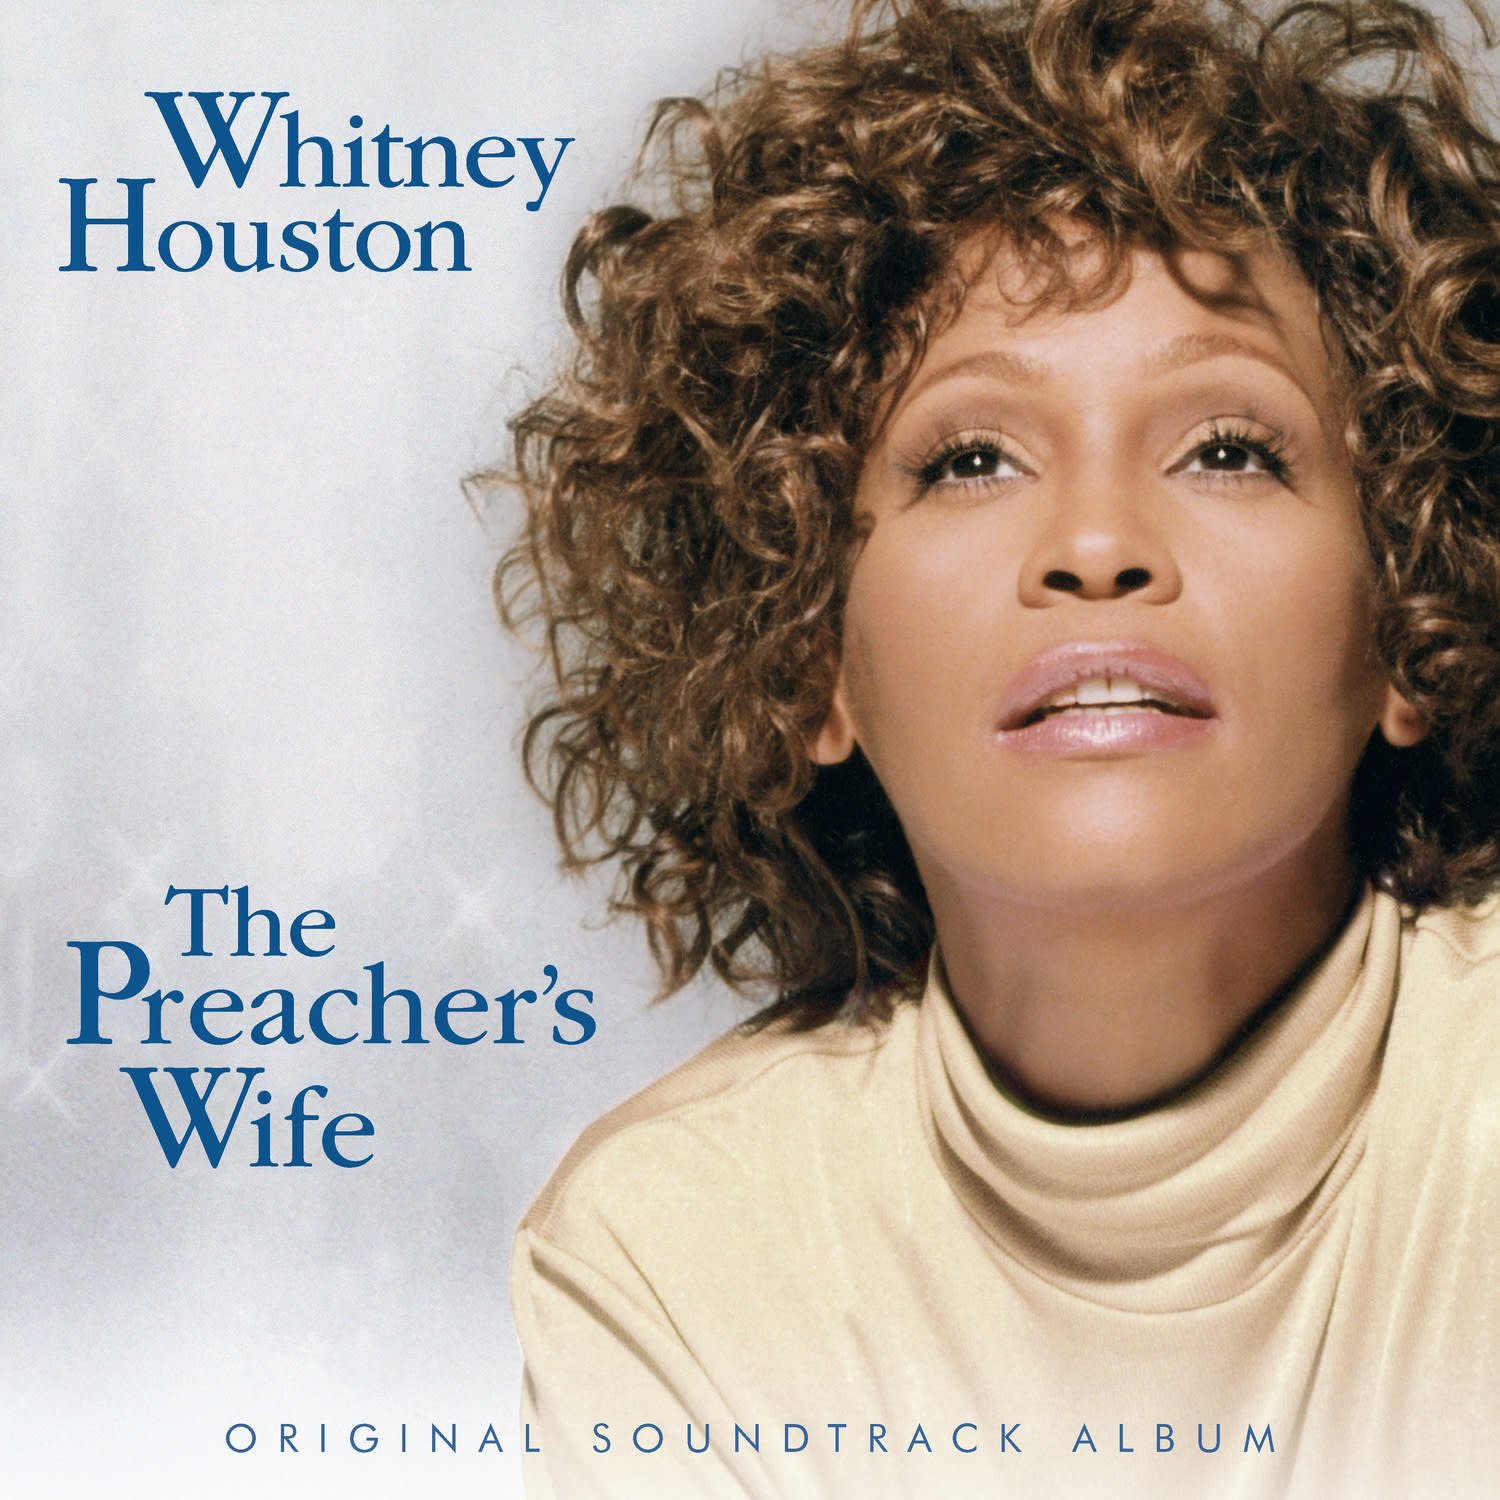 Whitney Houston Greatest Hits Full Album  Whitney Houston Best Song Ever  All Time 